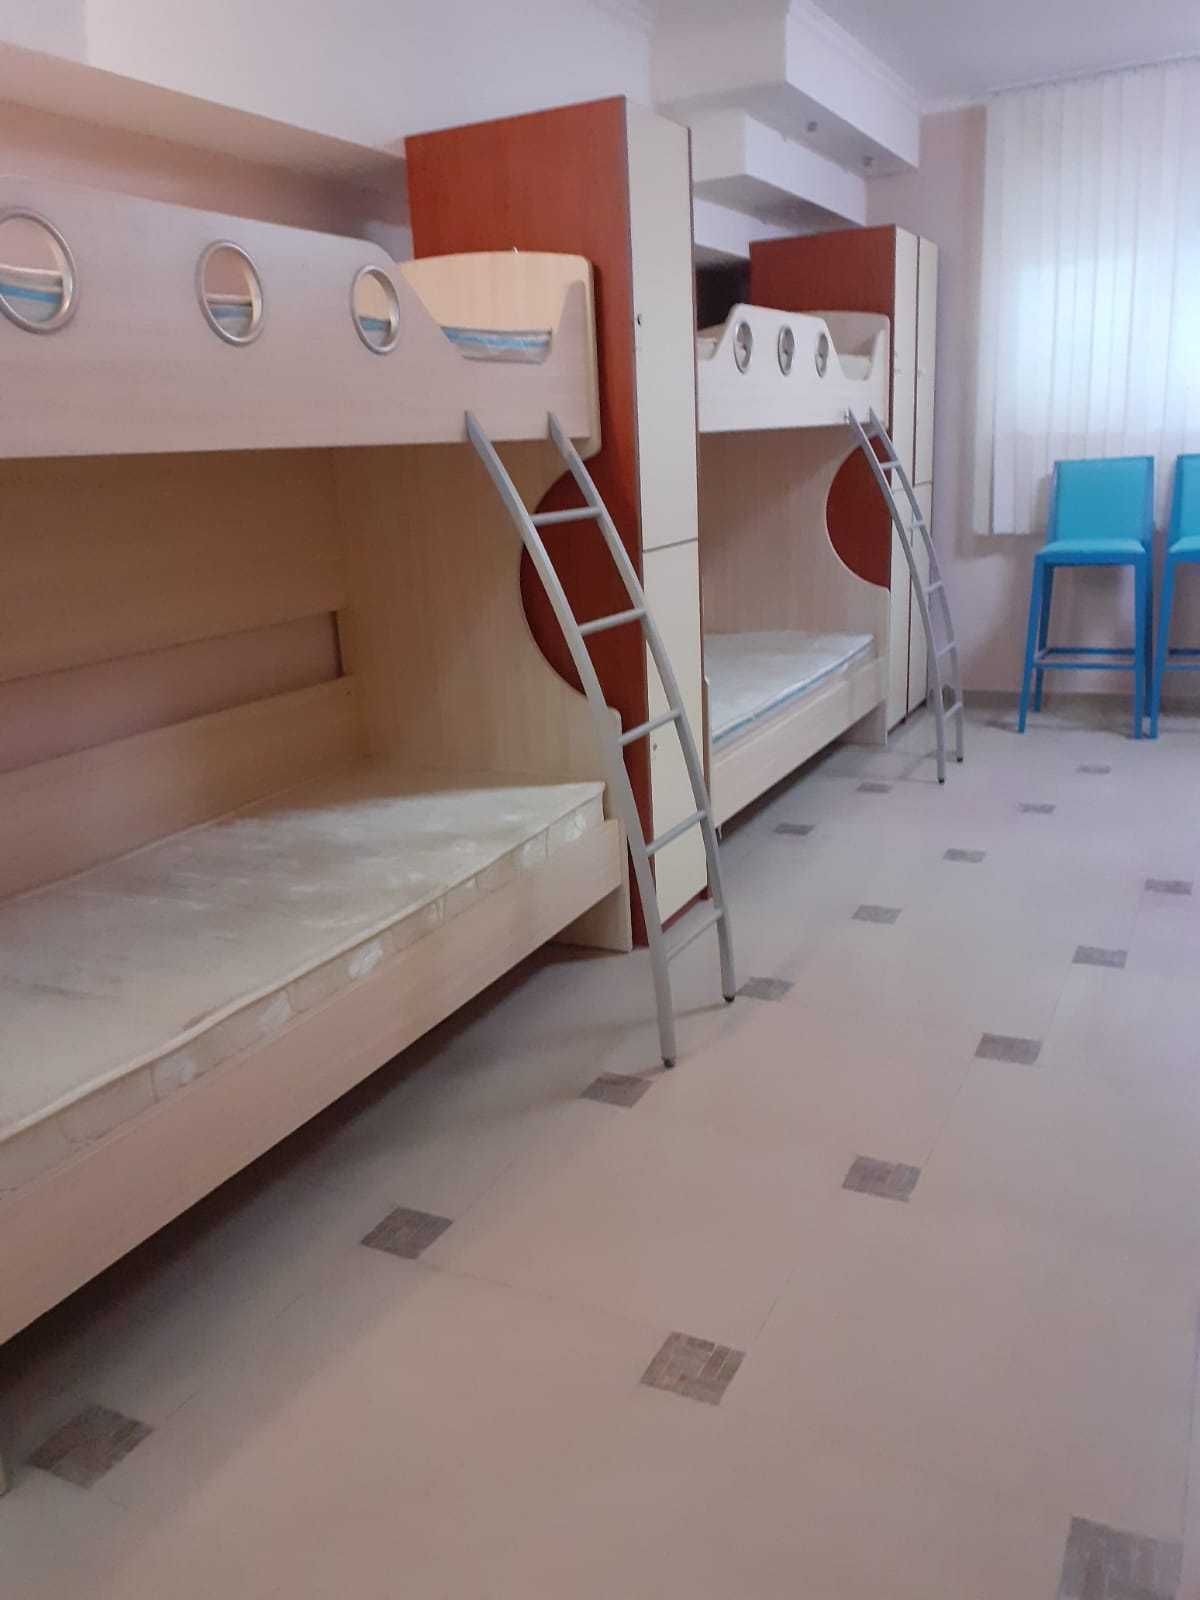 Кровати двуярусные с матрацами и шкафами 12 шт  на 24 места